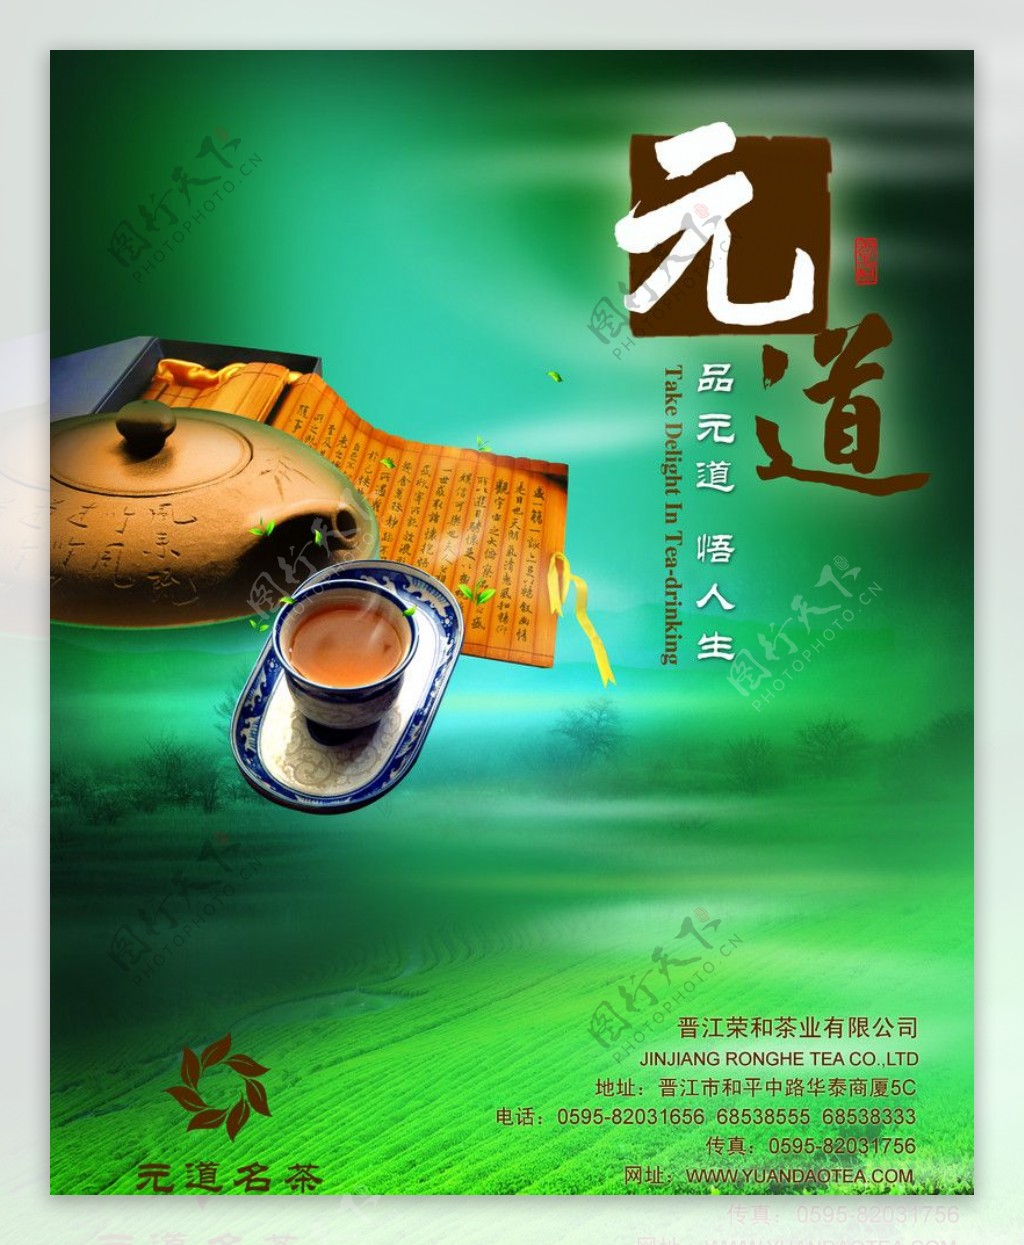 元道茶业